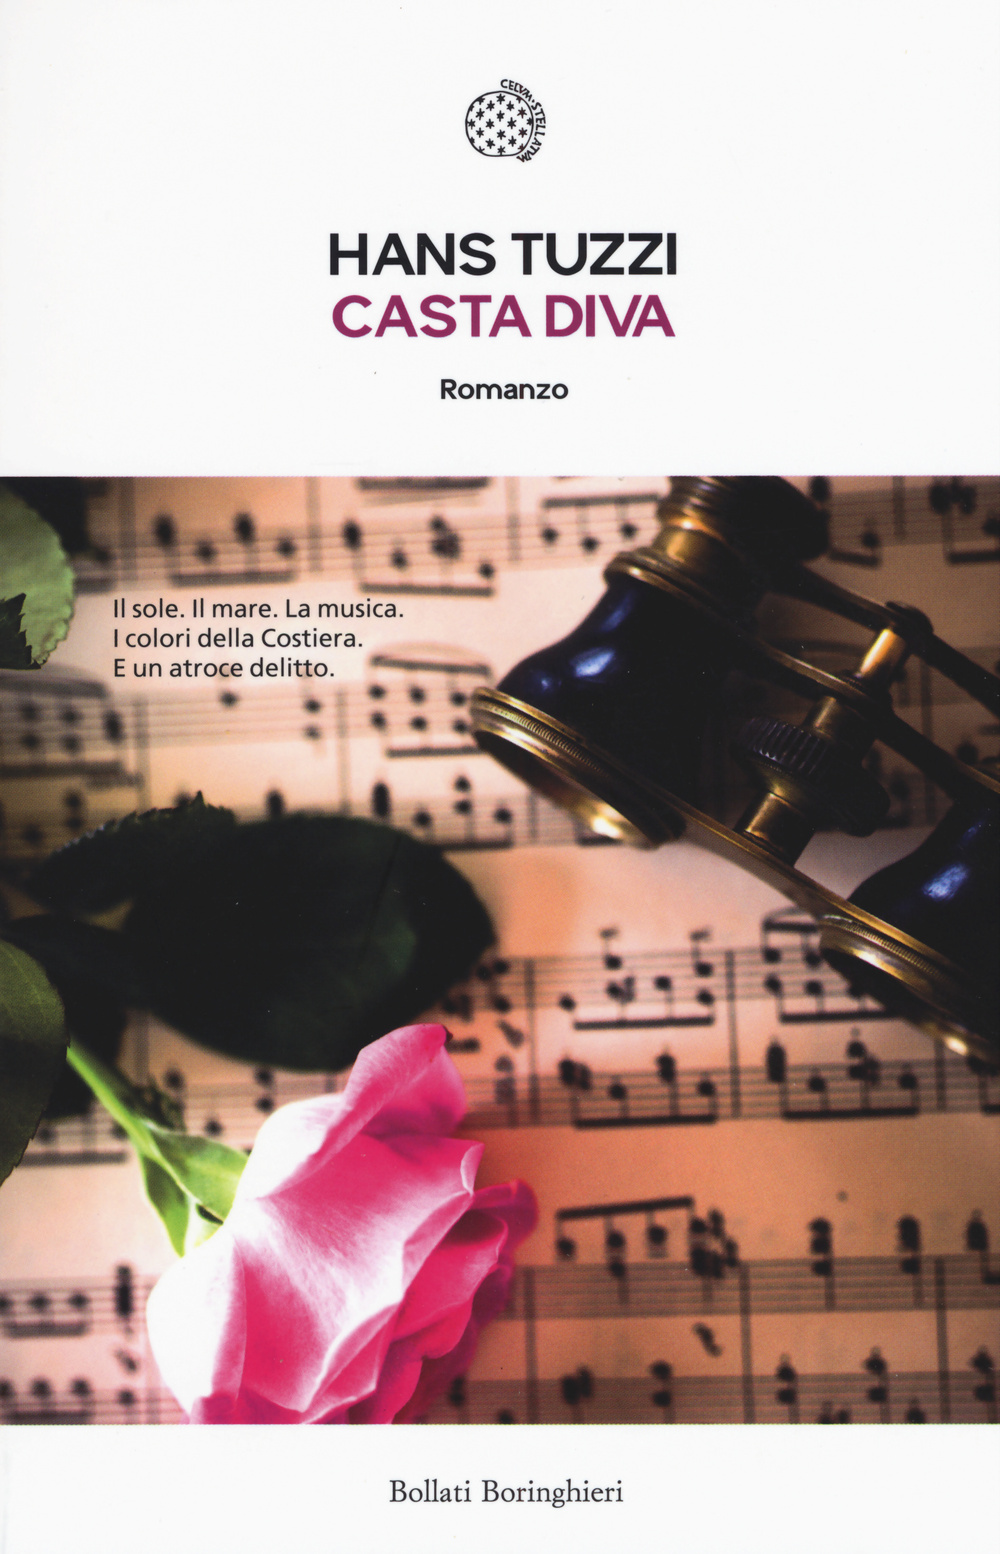 Casta Diva. Le indagini di Norberto Melis